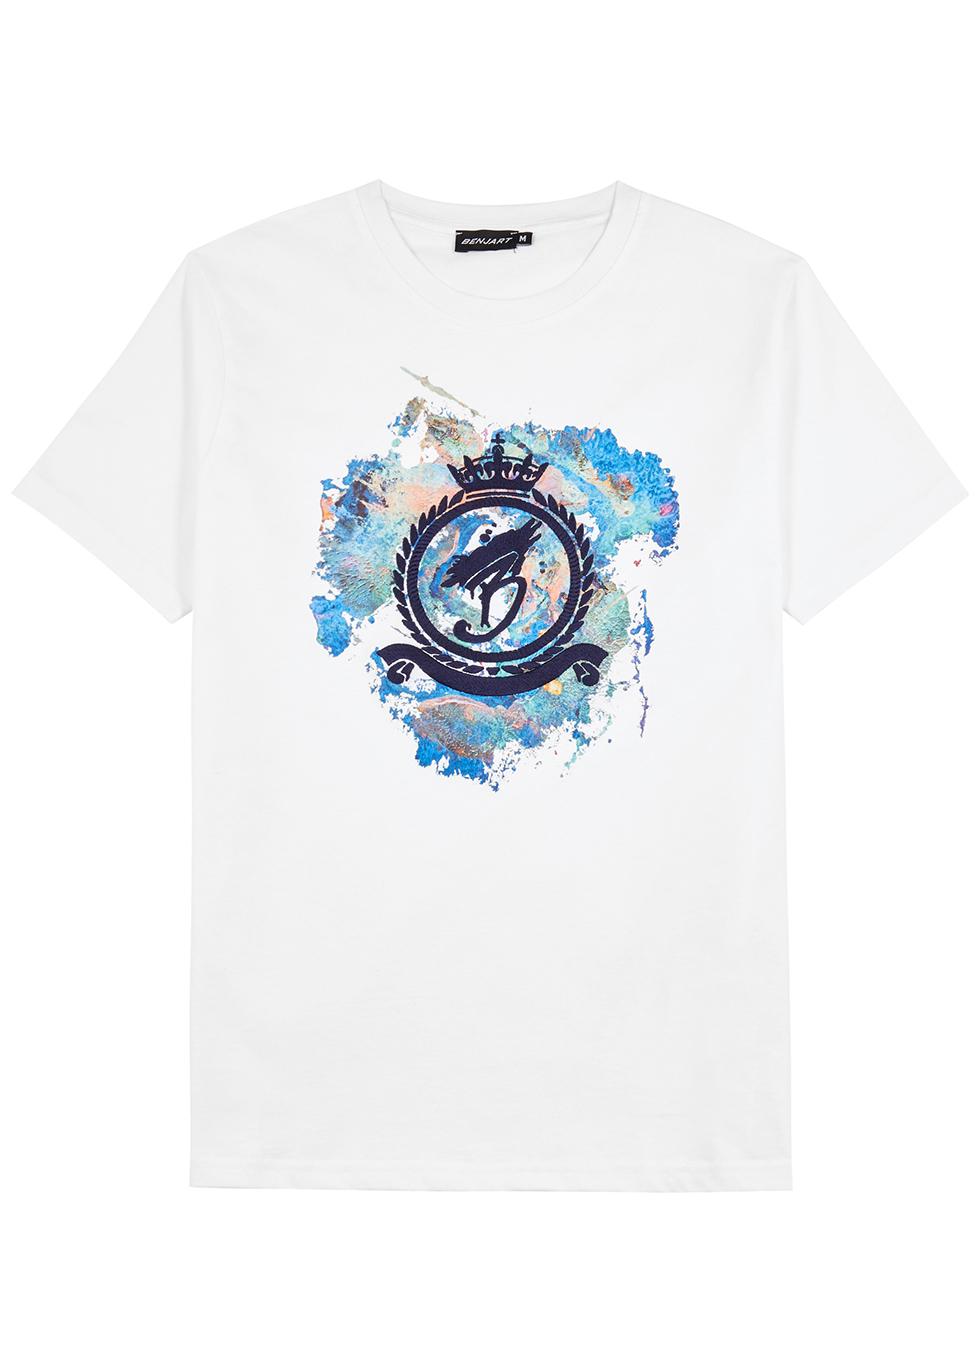 Emblem Spray cotton T-shirt by BENJART